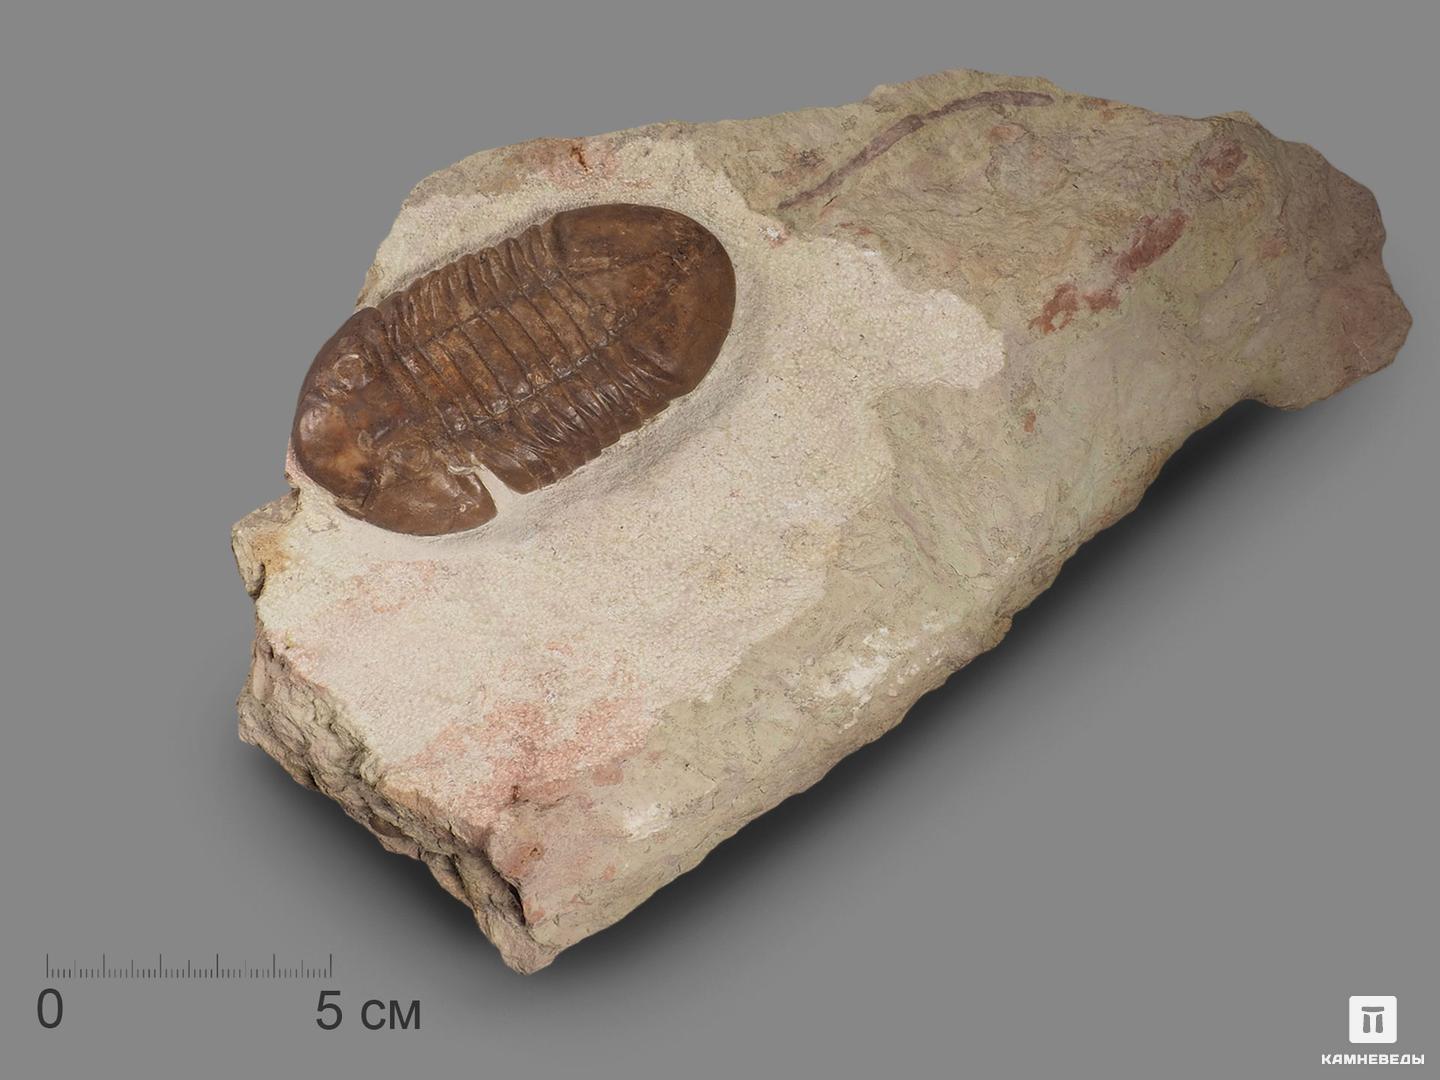 Трилобит Asaphus plautini F. Schmidt на породе, 24,5х14,1х3,6 см, 18502, фото 1